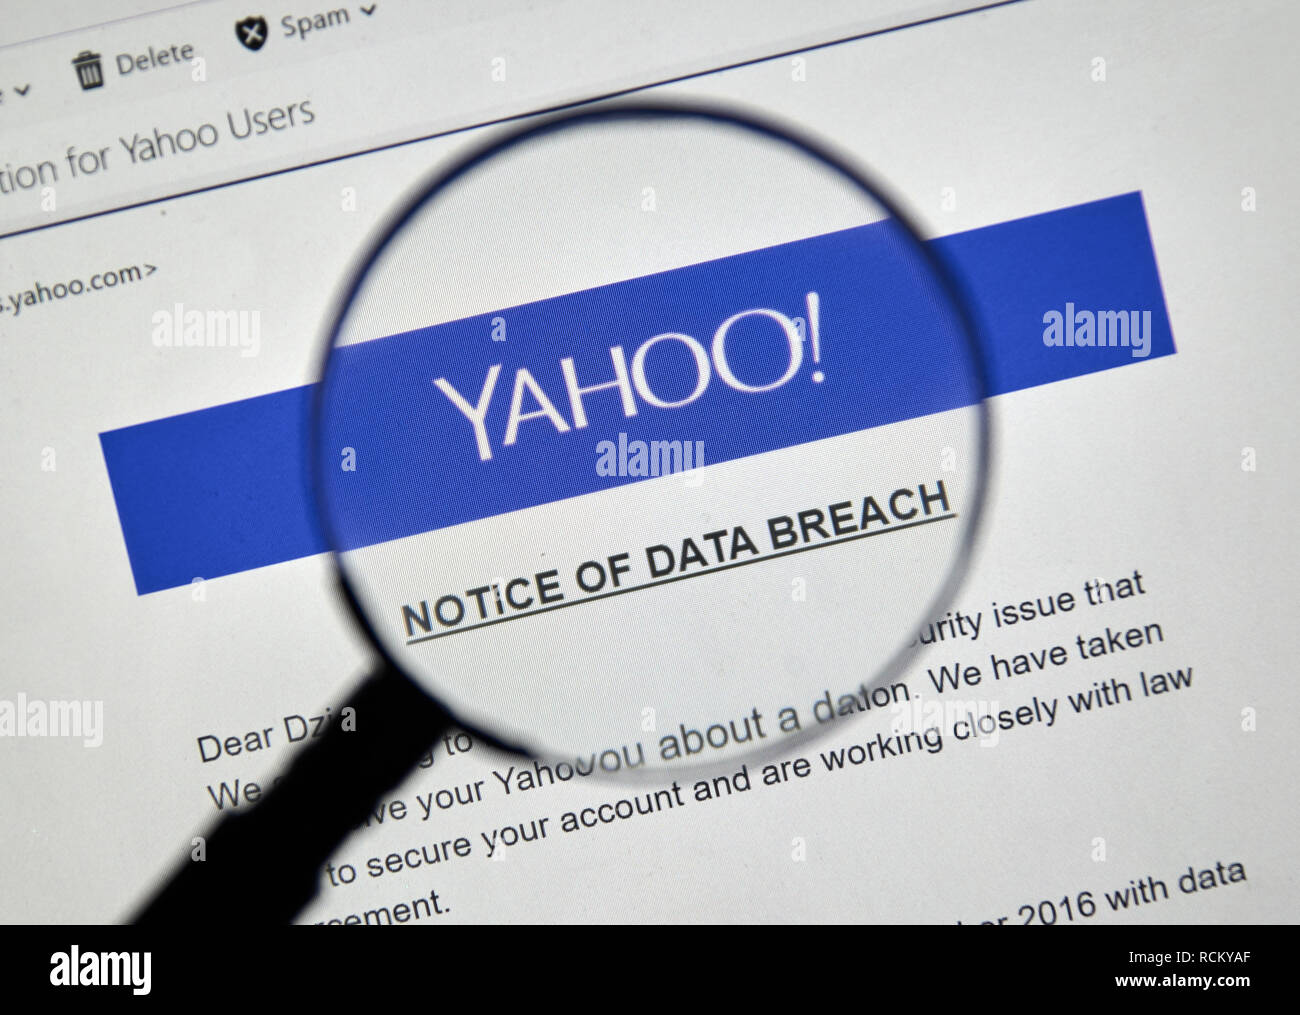 MONTREAL, Canada - 15 dicembre 2016 : Yahoo avviso di violazione dei dati sotto la lente di ingrandimento. Foto Stock